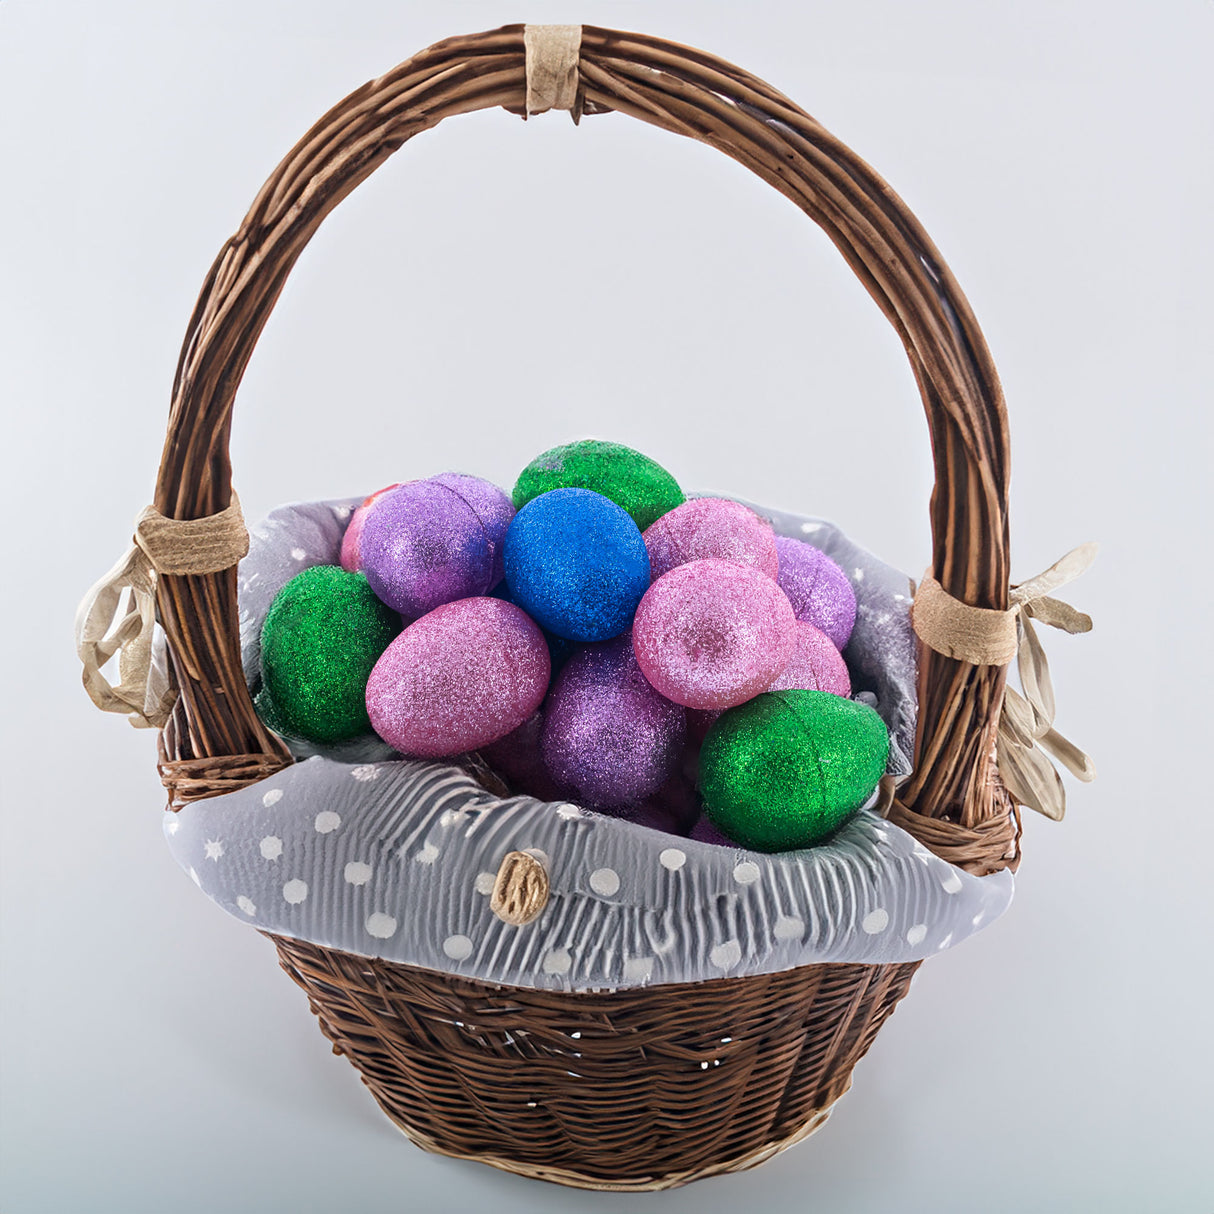 BestPysanky online gift shop sells glittered eggs, plastic eggs, easter eggs bulk, Easter decor, plastic eggs easter, egg hunt, Easter decorations, decorative